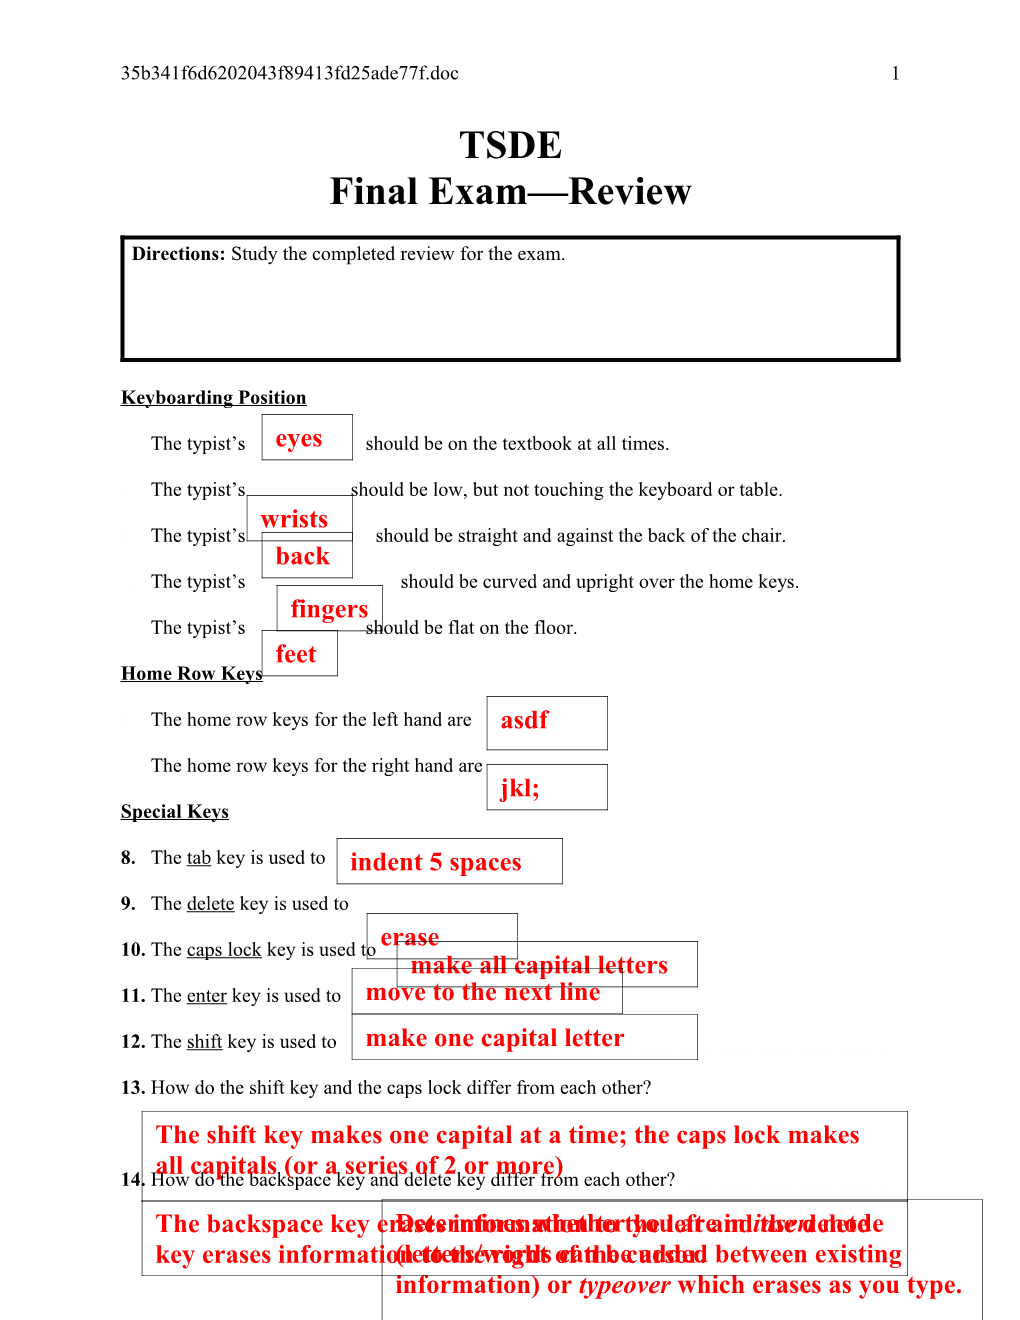 Final Exam Review-Key for Website